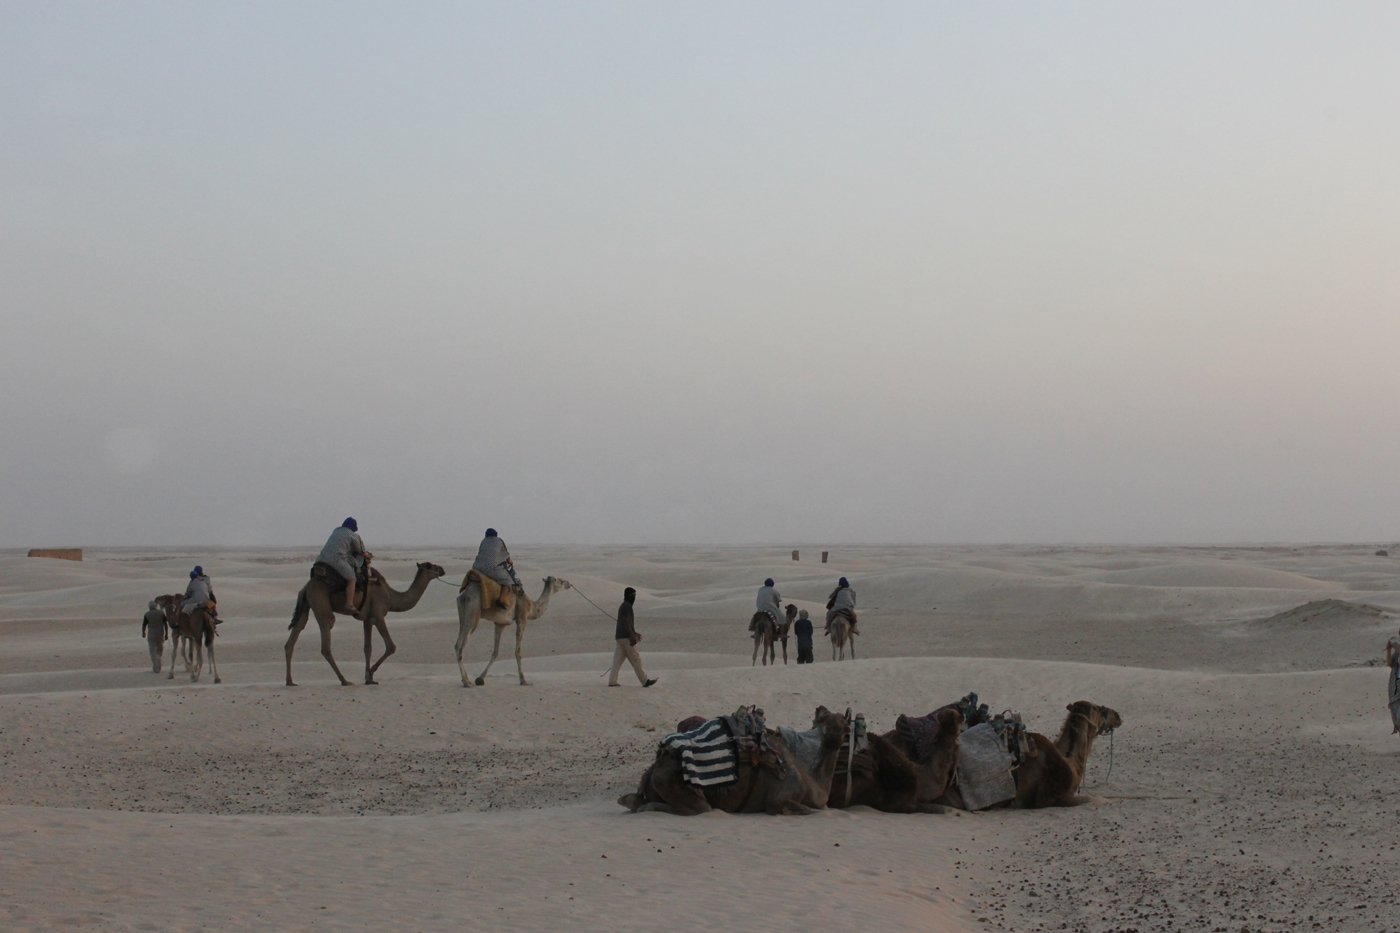 караван верблюдов в пустыне